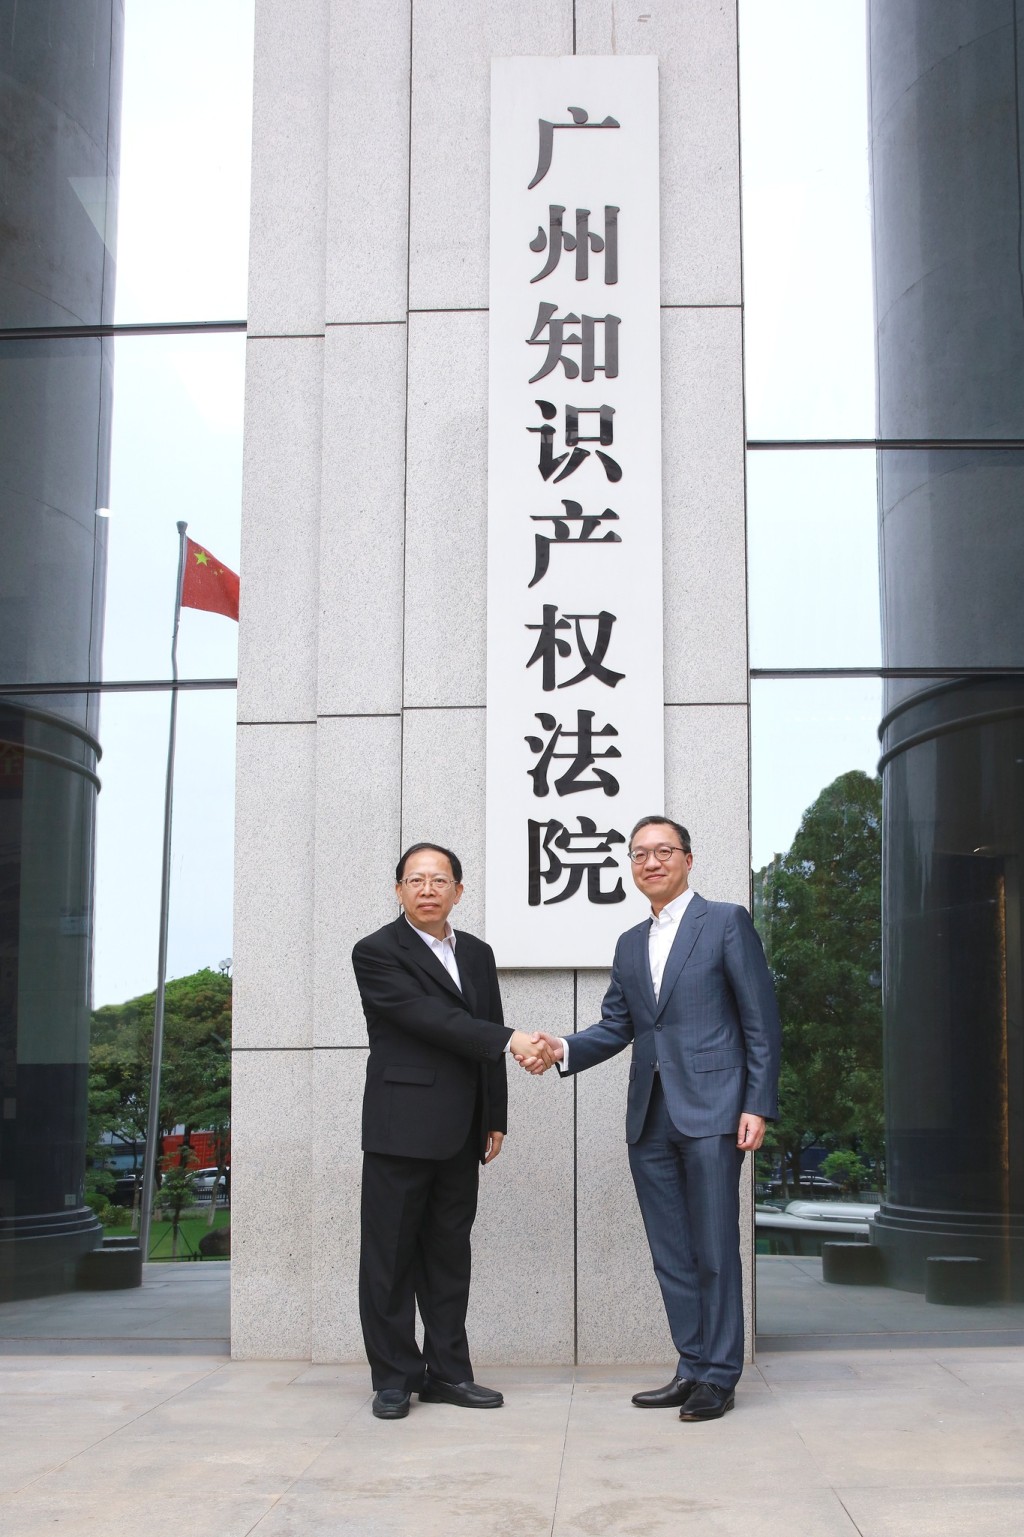 林定国到访广州知识产权法院，了解法院的机构设置和工作。林定国FB图片